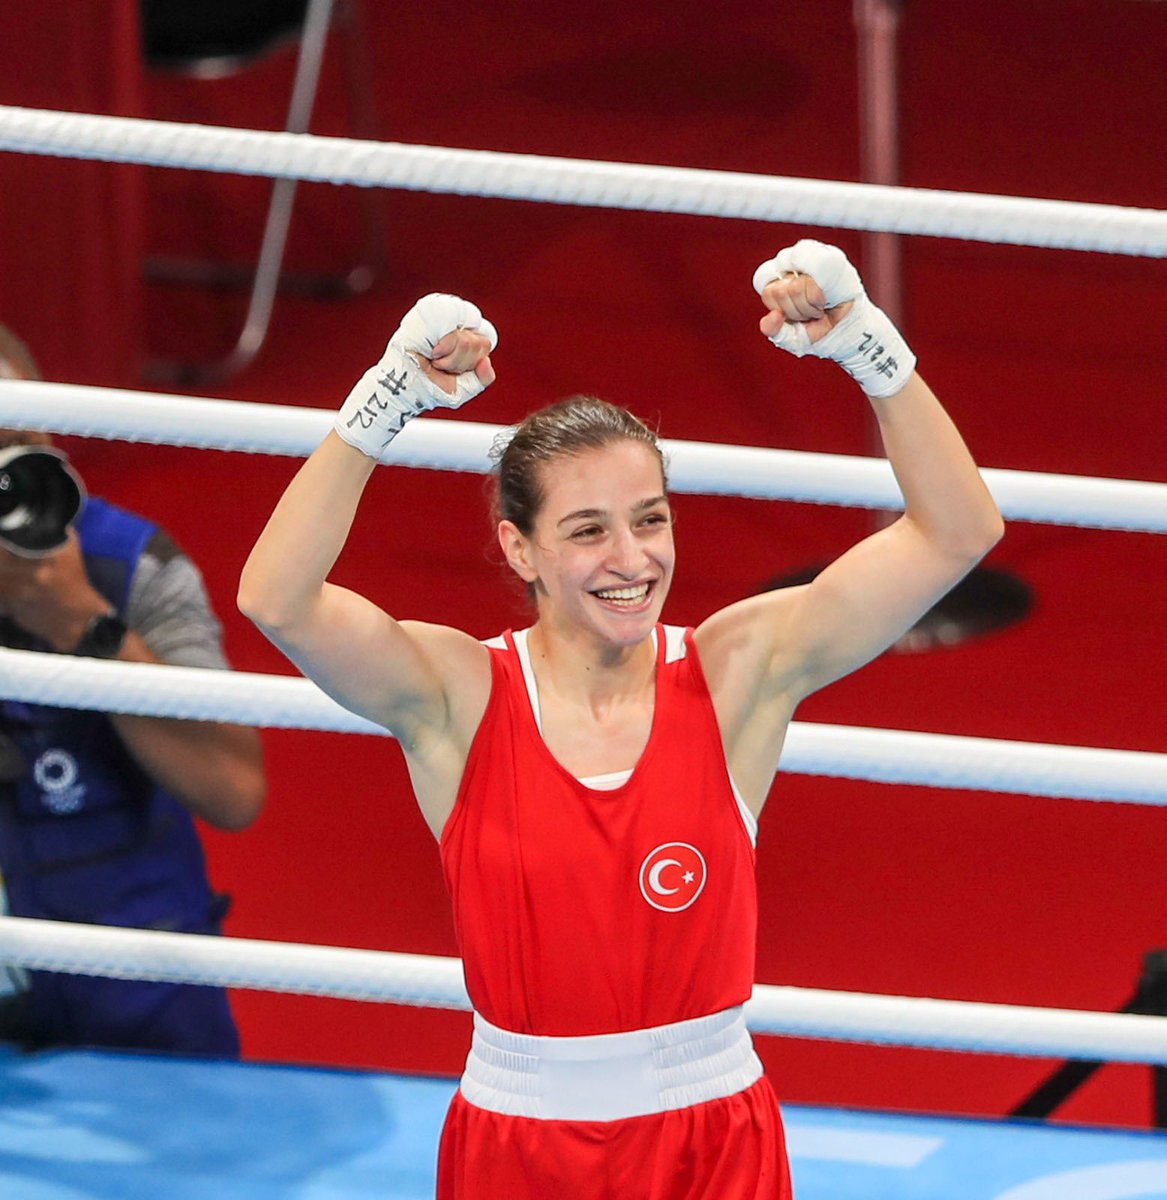 Tebrikler şampiyon! 👏 Avrupa Kadınlar Boks Şampiyonası'nda ikinci kez Avrupa Şampiyonu olan milli sporcumuz Buse Naz Çakıroğlu’nu gönülden kutluyorum. 🇹🇷 @busenazckroglu